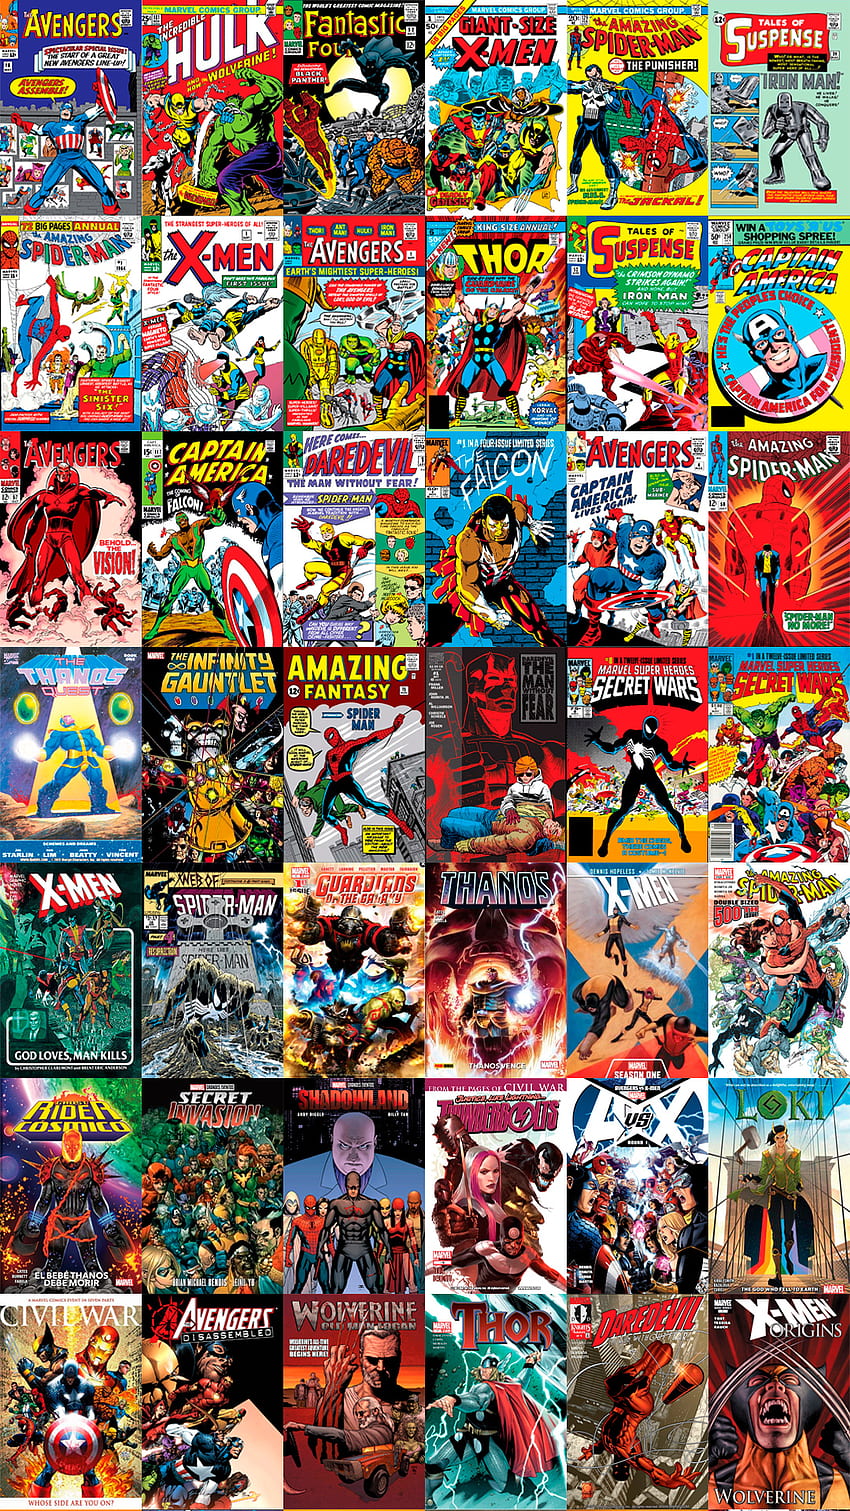 マーベル・コミック、トール、ウルヴァリン、エックスメン、エックスメン、アイアンマン、スパイダーマン、ロキ、アベンジャーズ、スーパーヒーロー、アベンジャーズ、デアデビル、スパイダーマン、キャプテン・アメリカ、コミック、サノス、ハルク HD電話の壁紙